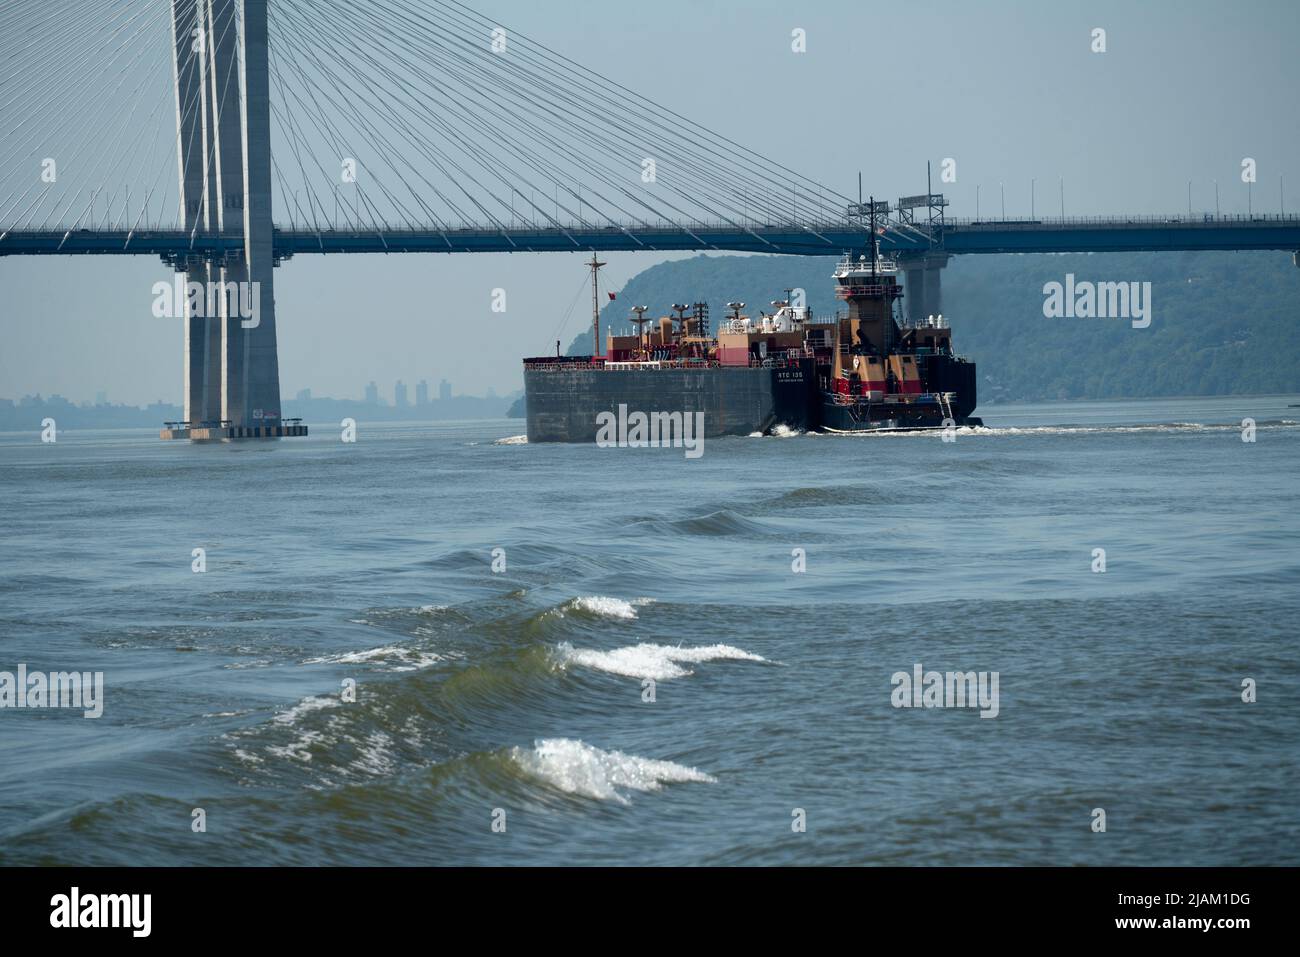 Ein Tankschiff und Schlepper von Reinauer Transportation, die unter der Mario Cuomo Bridge den Hudson River hinunter in Richtung New York City fahren. Stockfoto